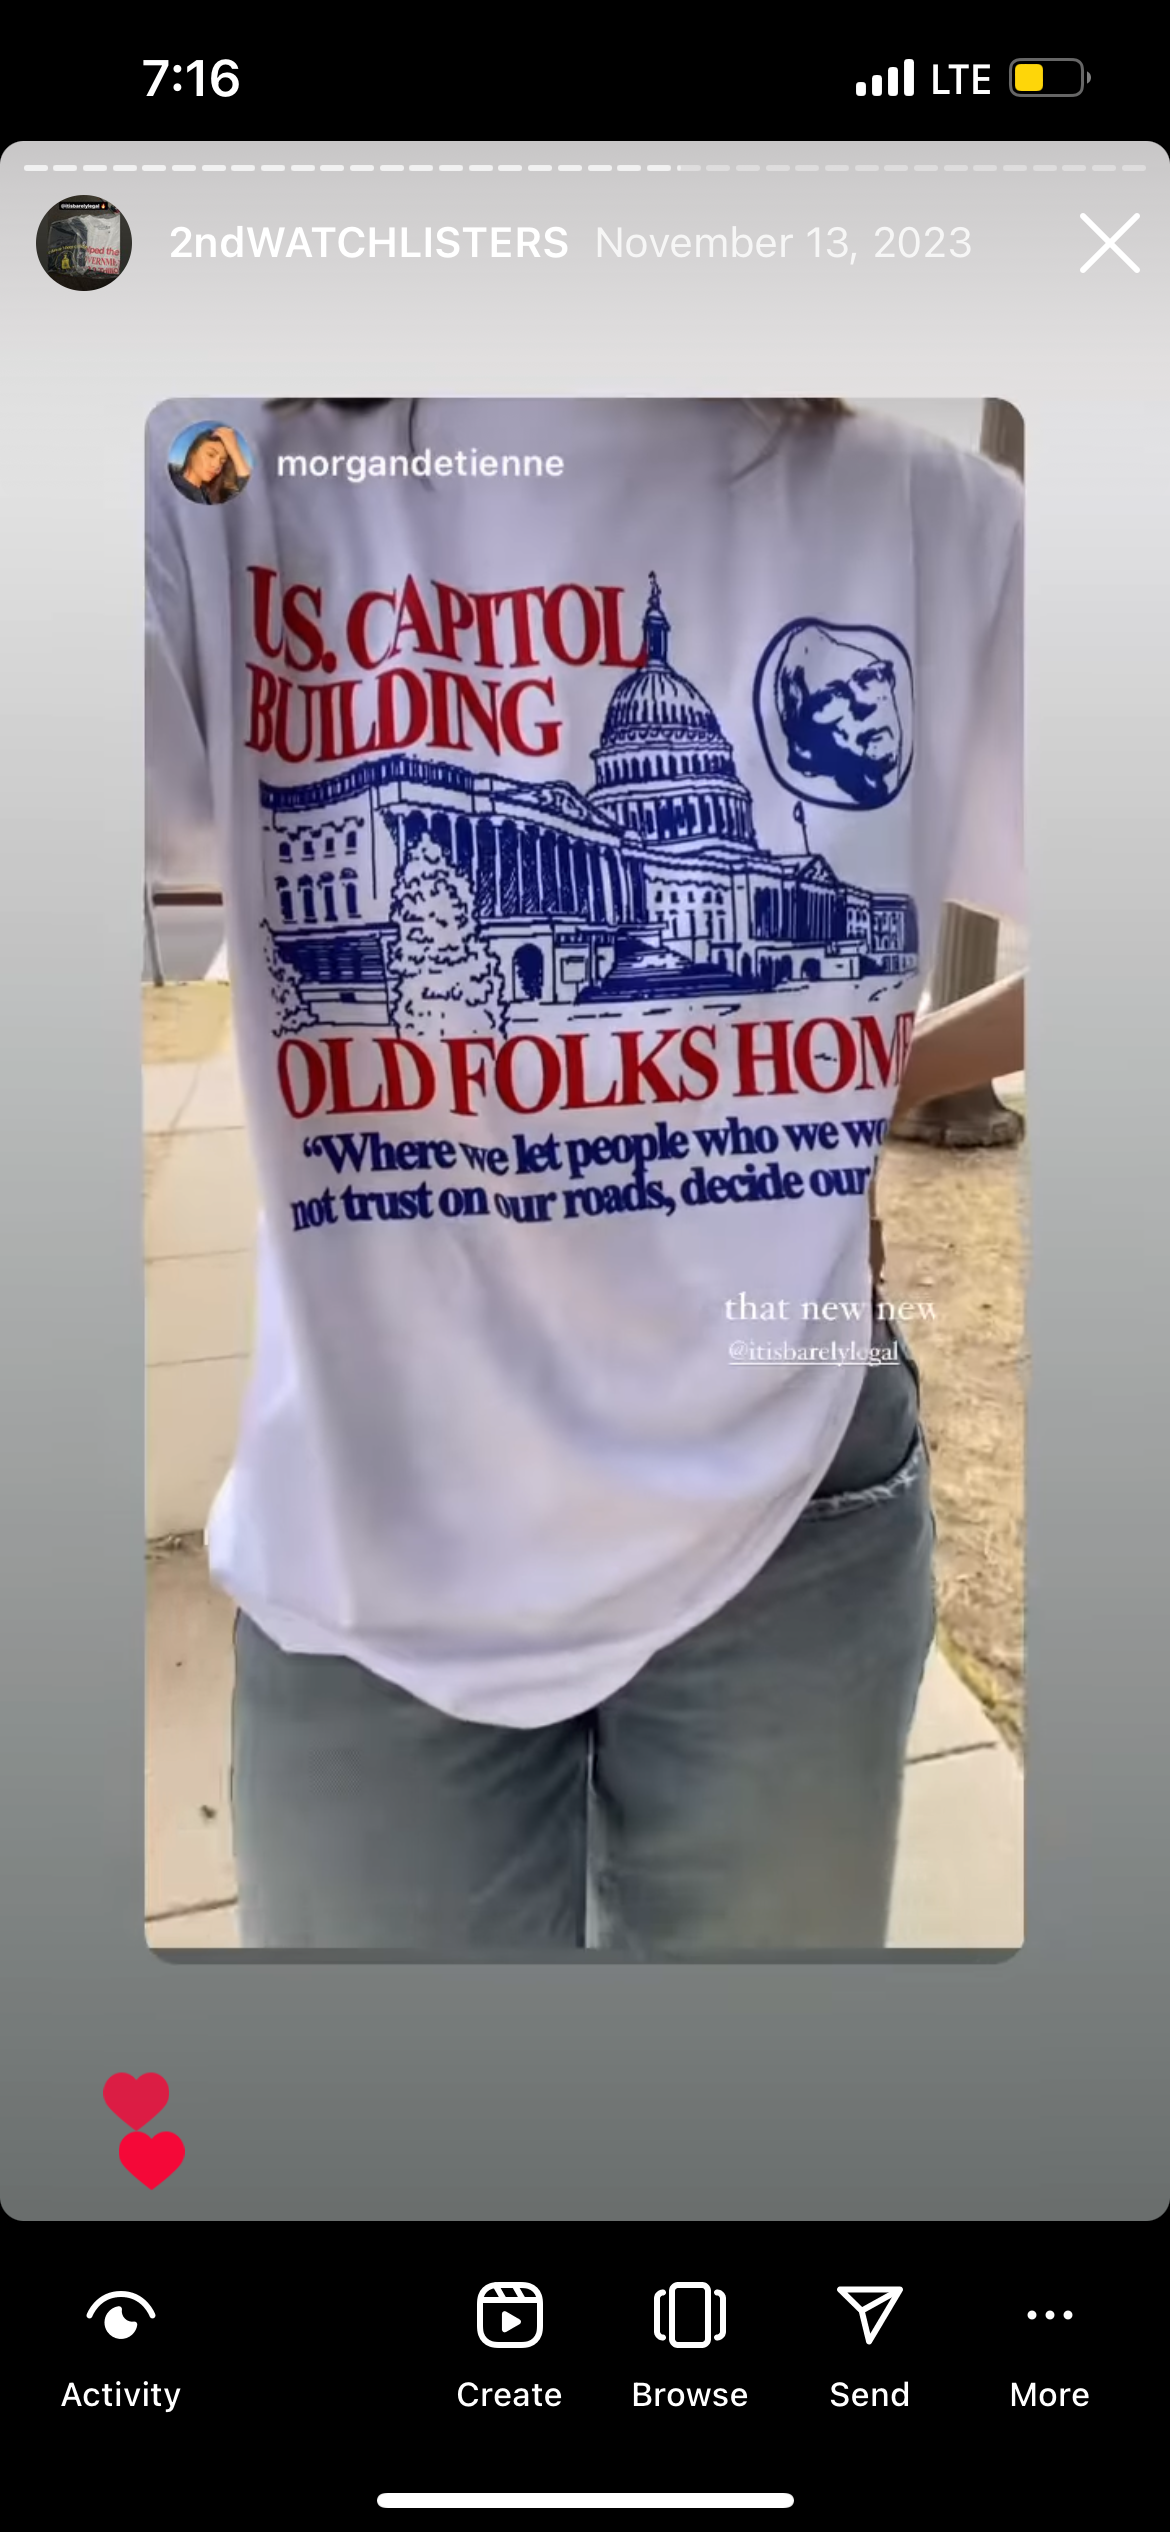 "OLDFOLKS" 7oz T-Shirt